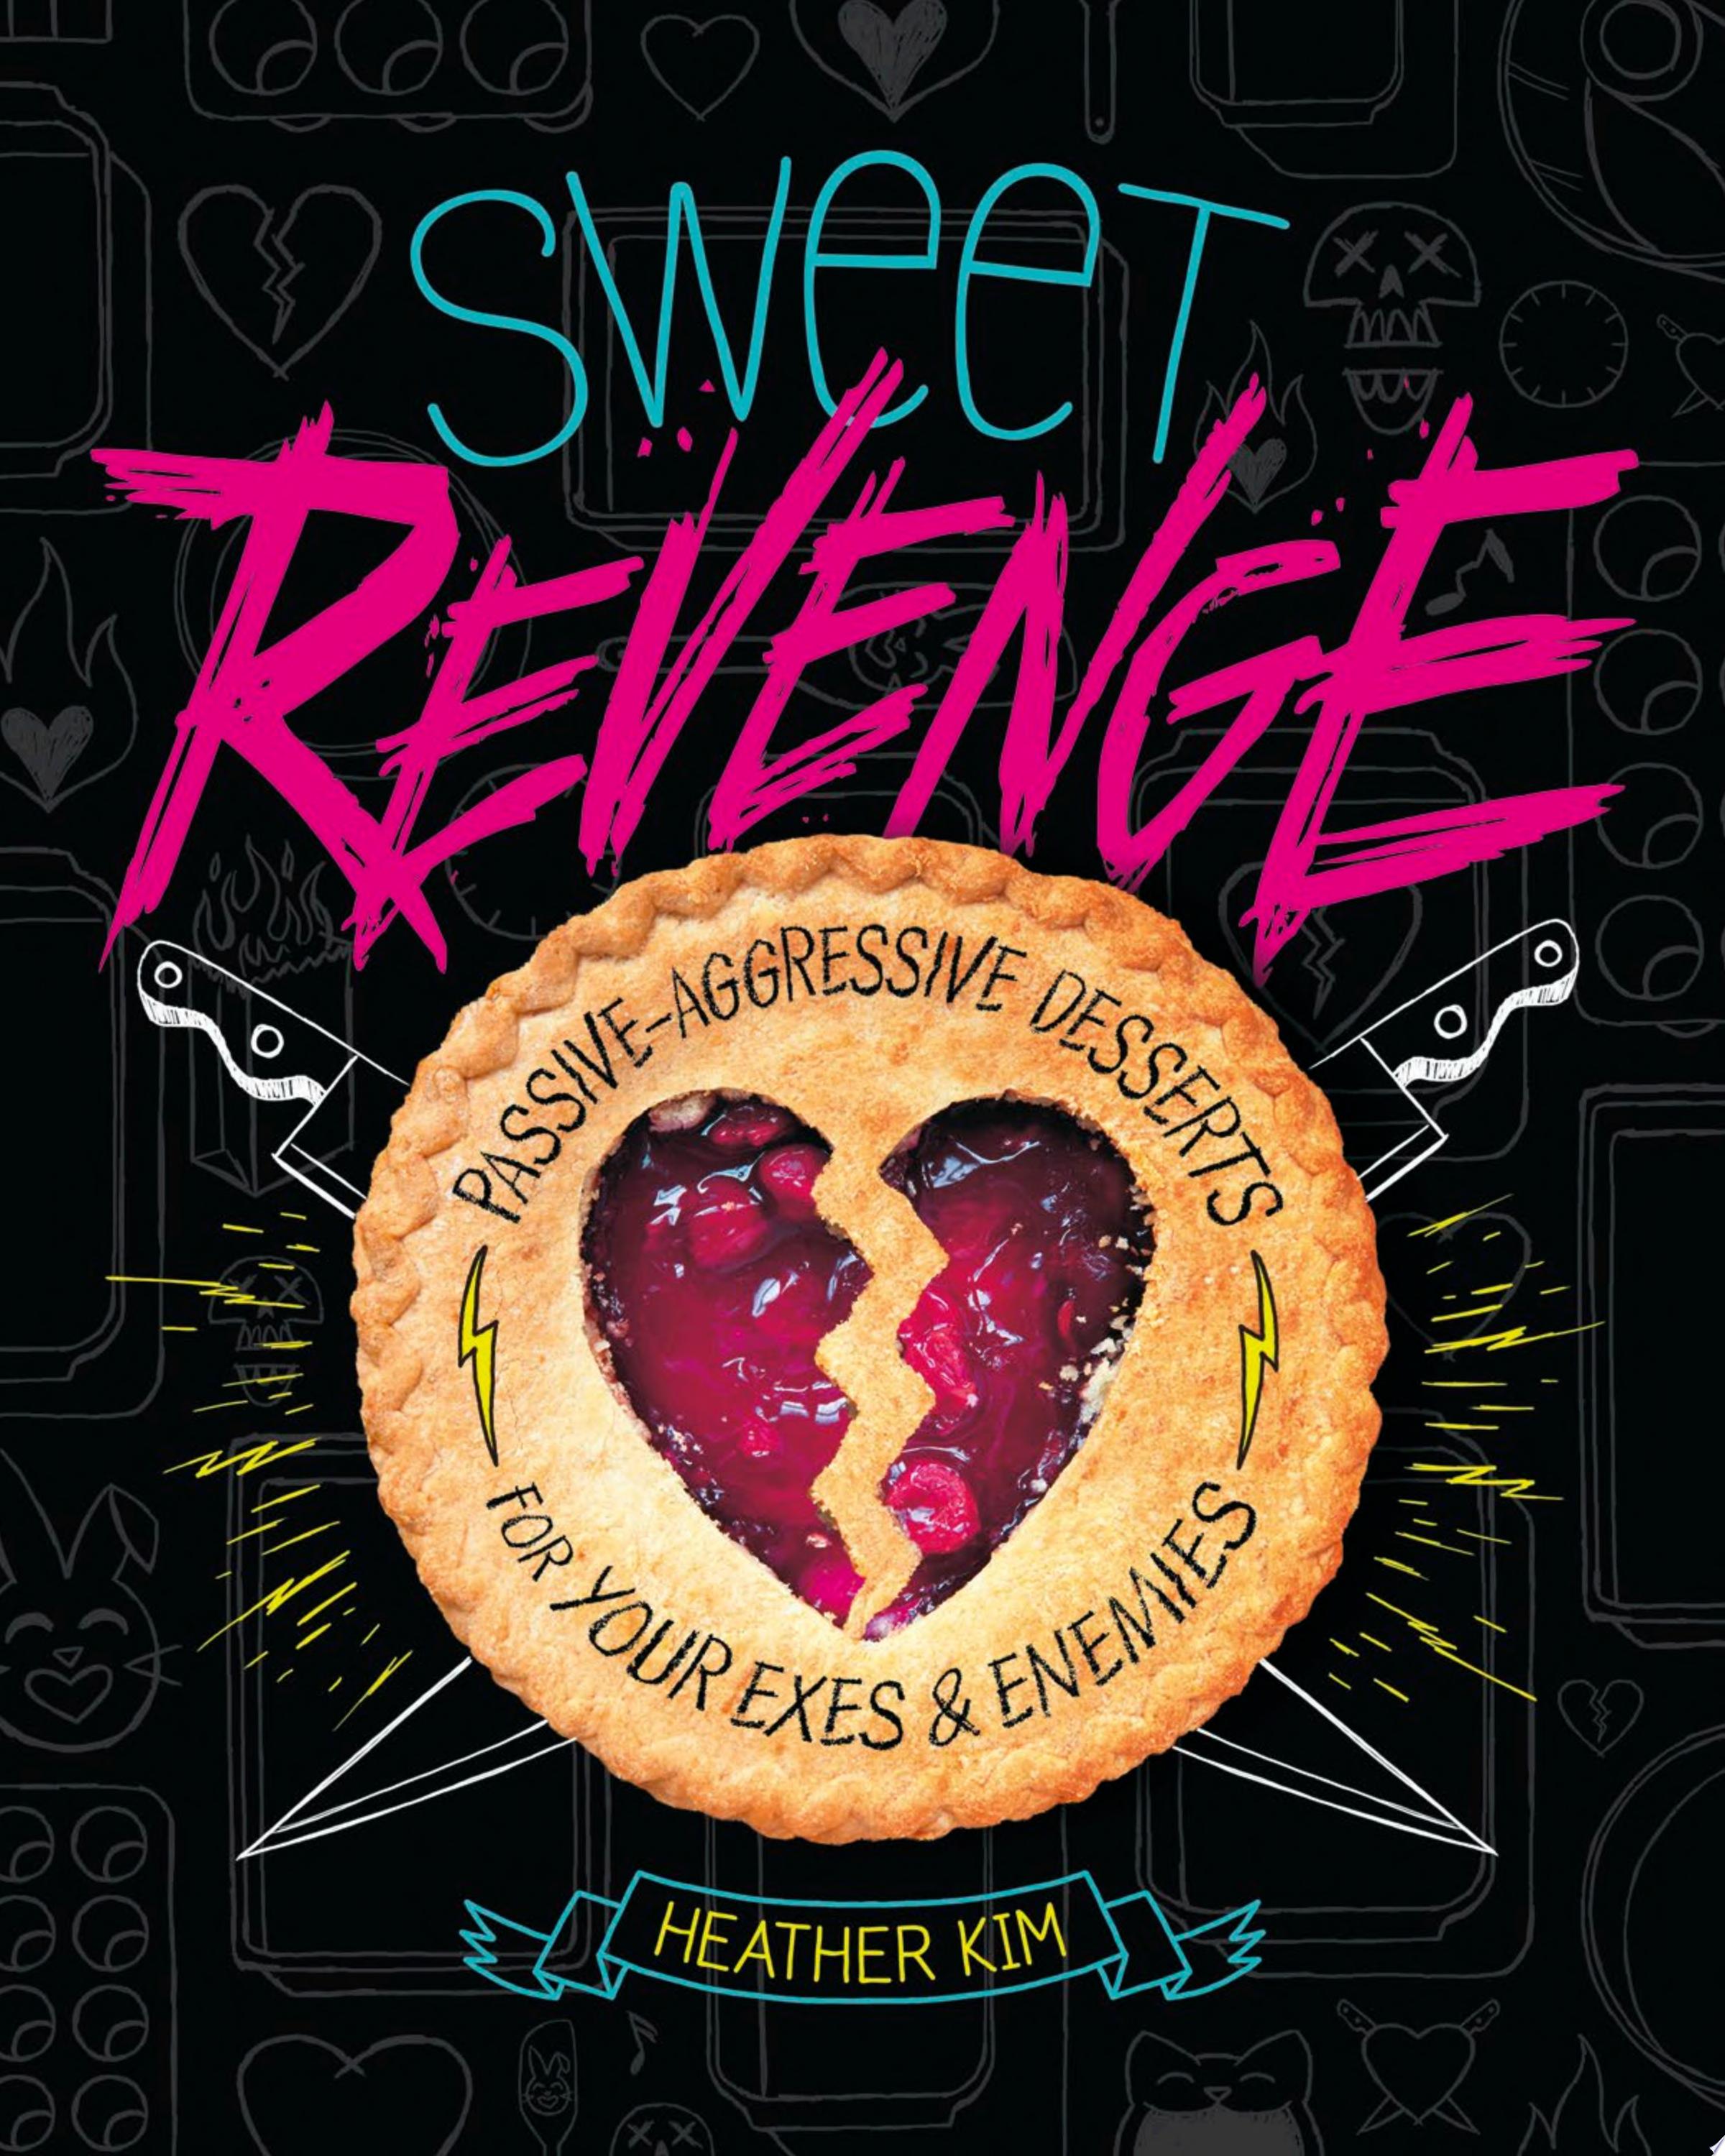 Image for "Sweet Revenge"